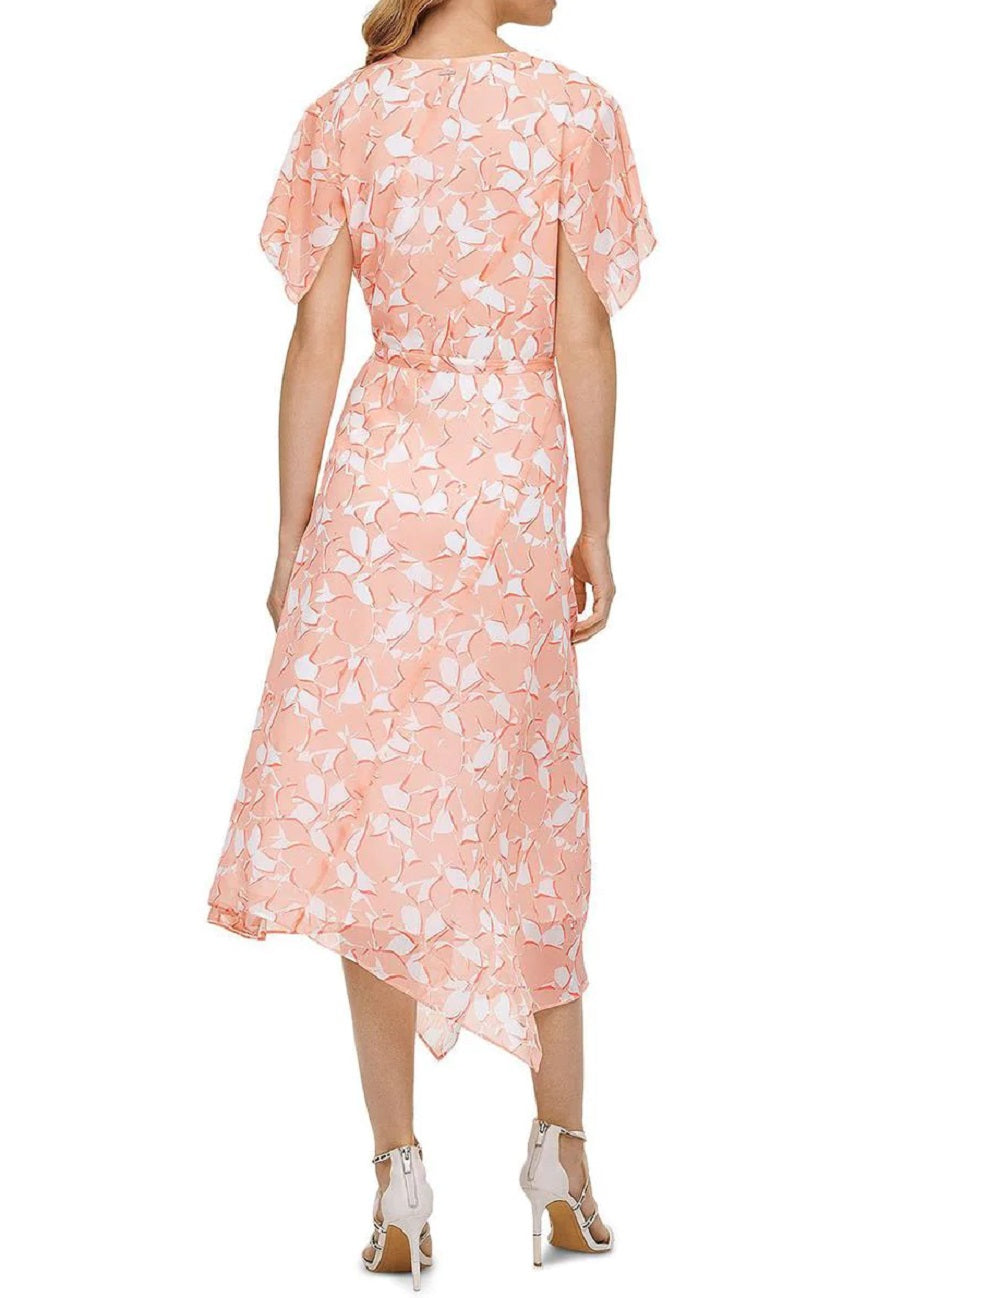 DKNY Women's Floral Print Wrap Dress Pink Size 14